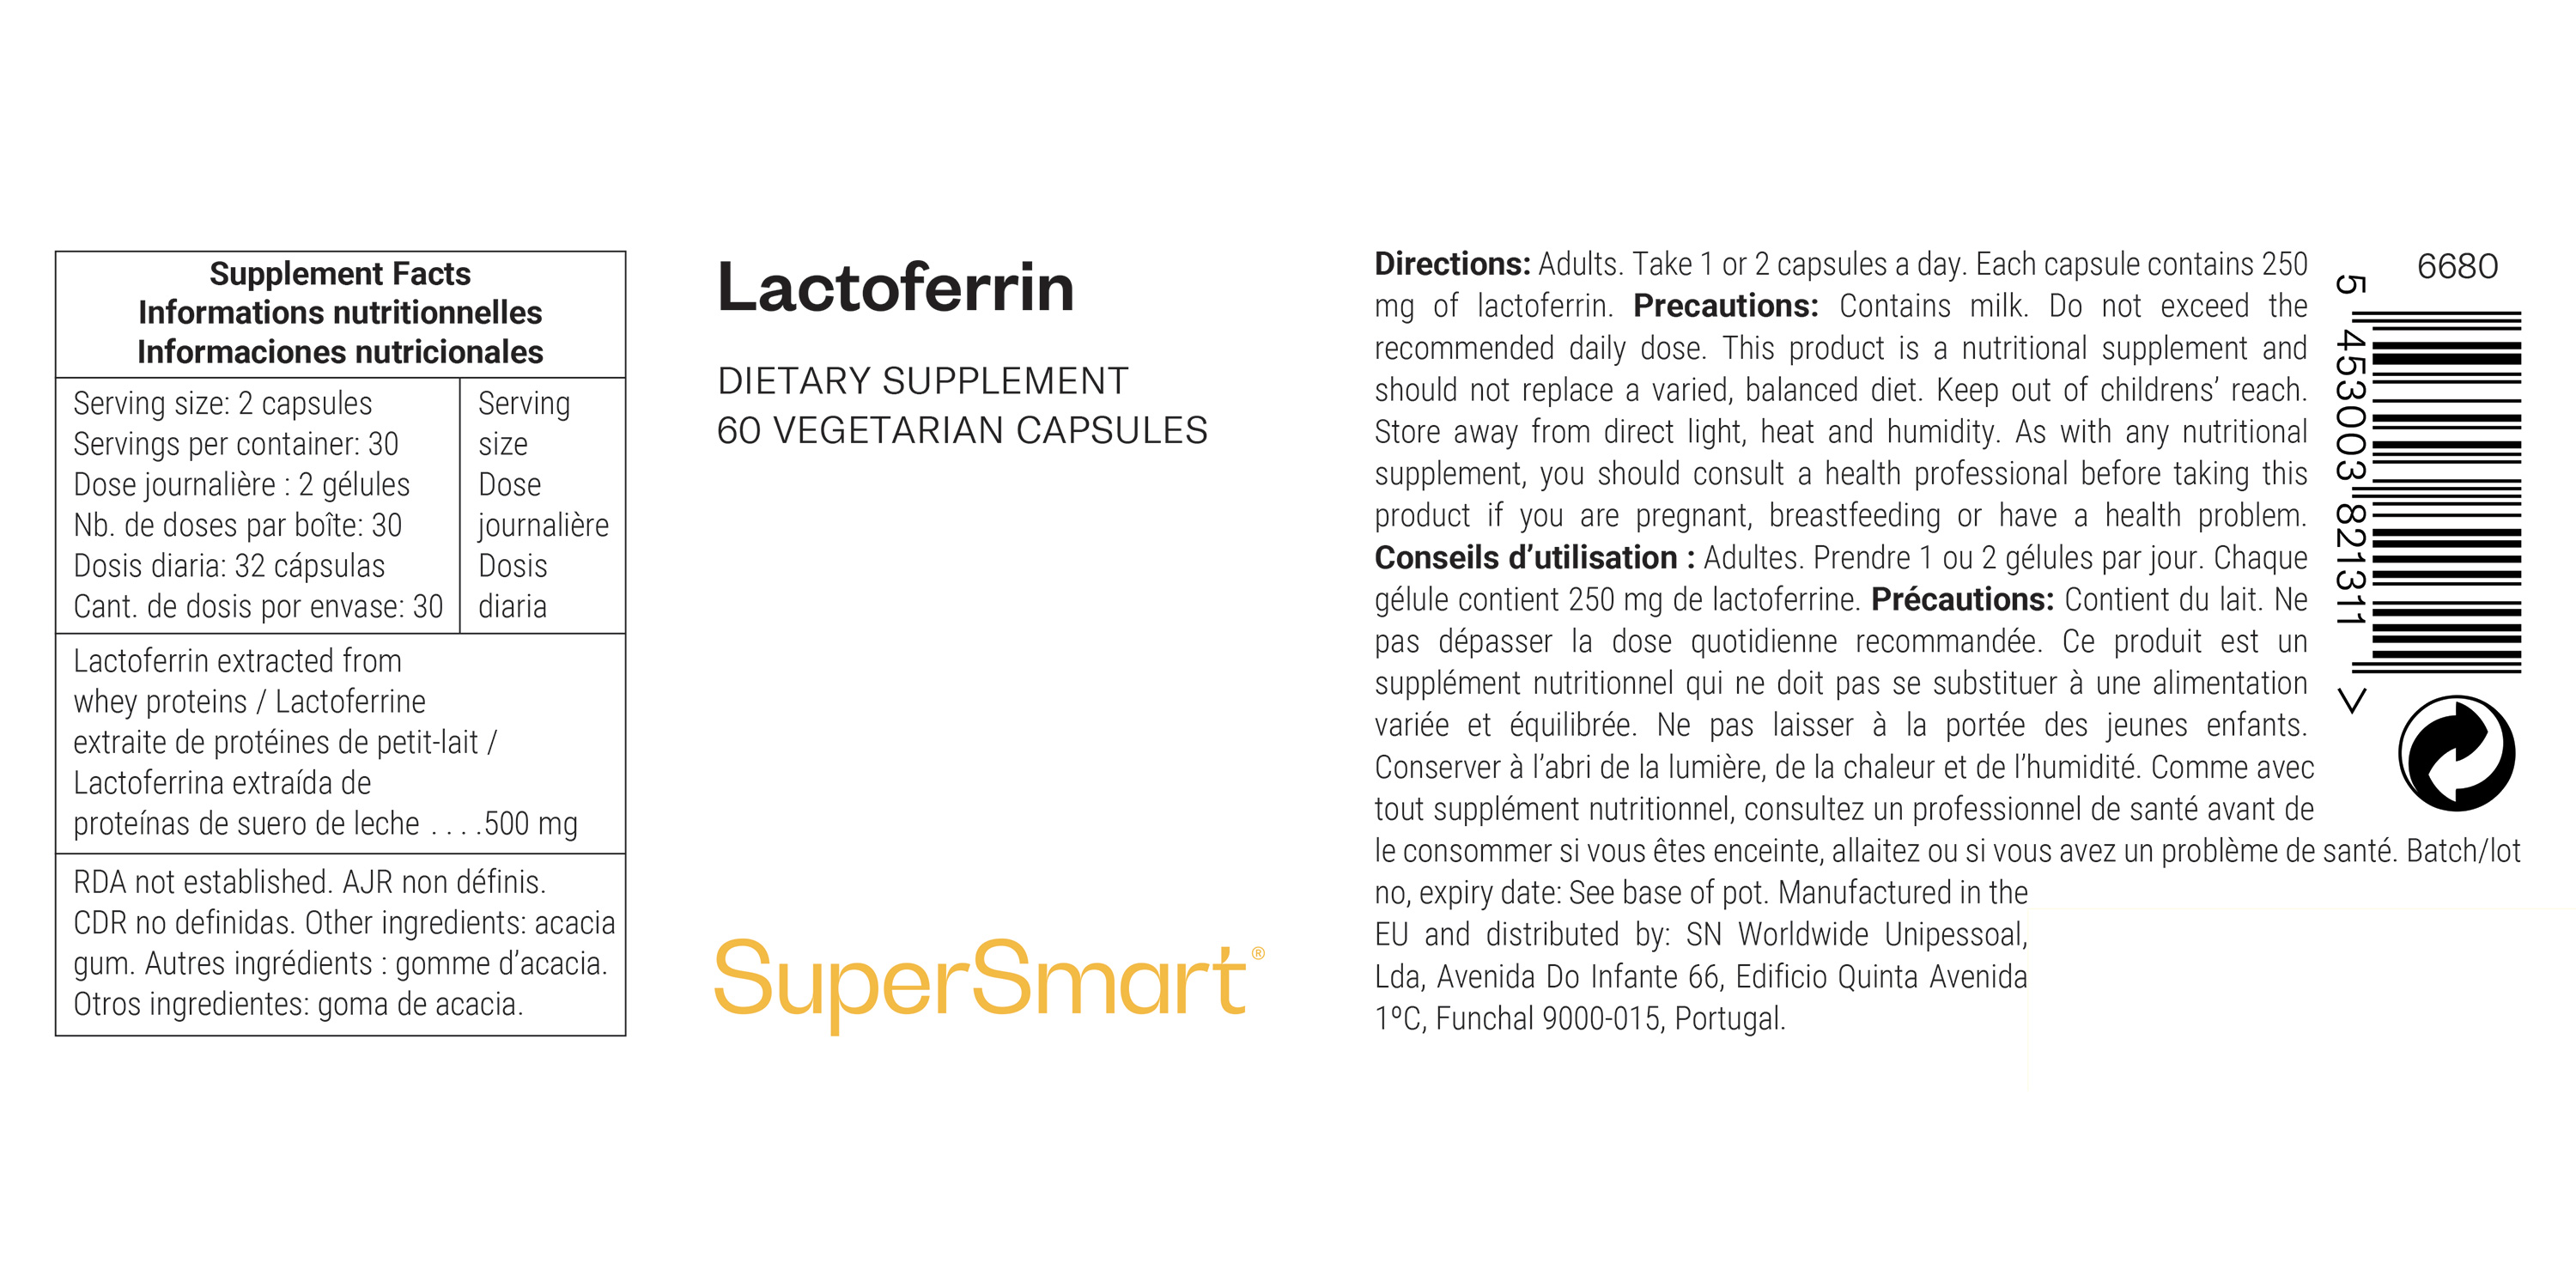 Lactoferrina suplemento alimentar, contribui para a saúde do sistema imunitário